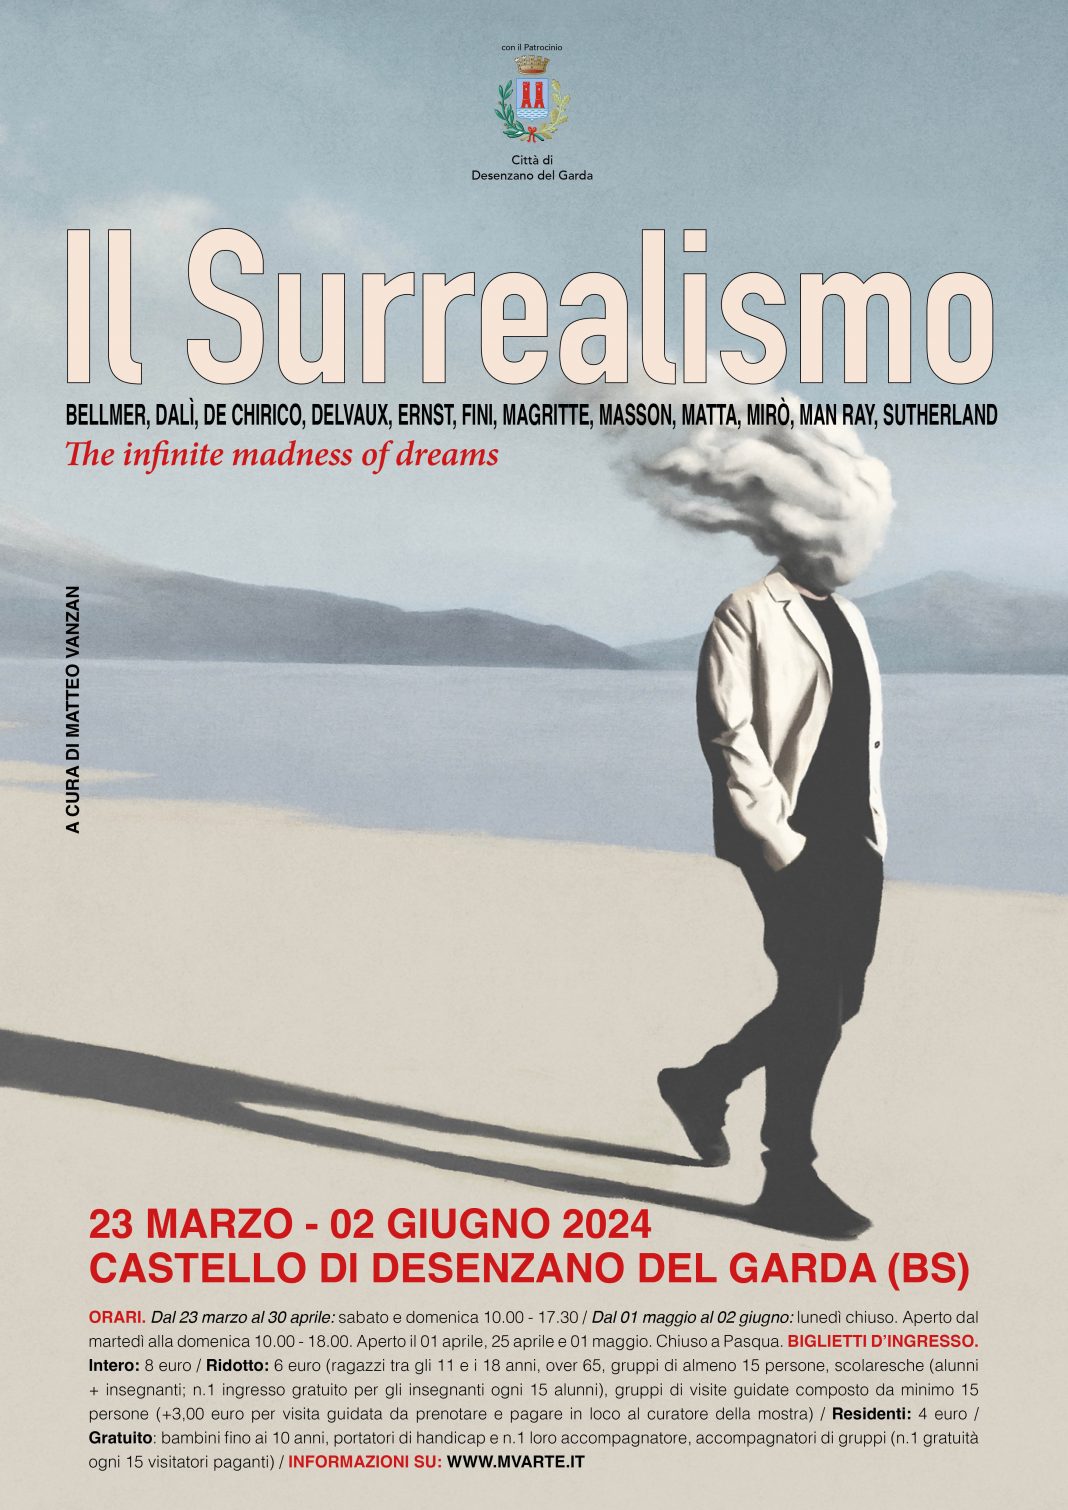 Il Surrealismo: the infinite madness of dreamshttps://www.exibart.com/repository/media/formidable/11/img/694/Surrealismo-Desenzano_del_Garda-1068x1510.jpg